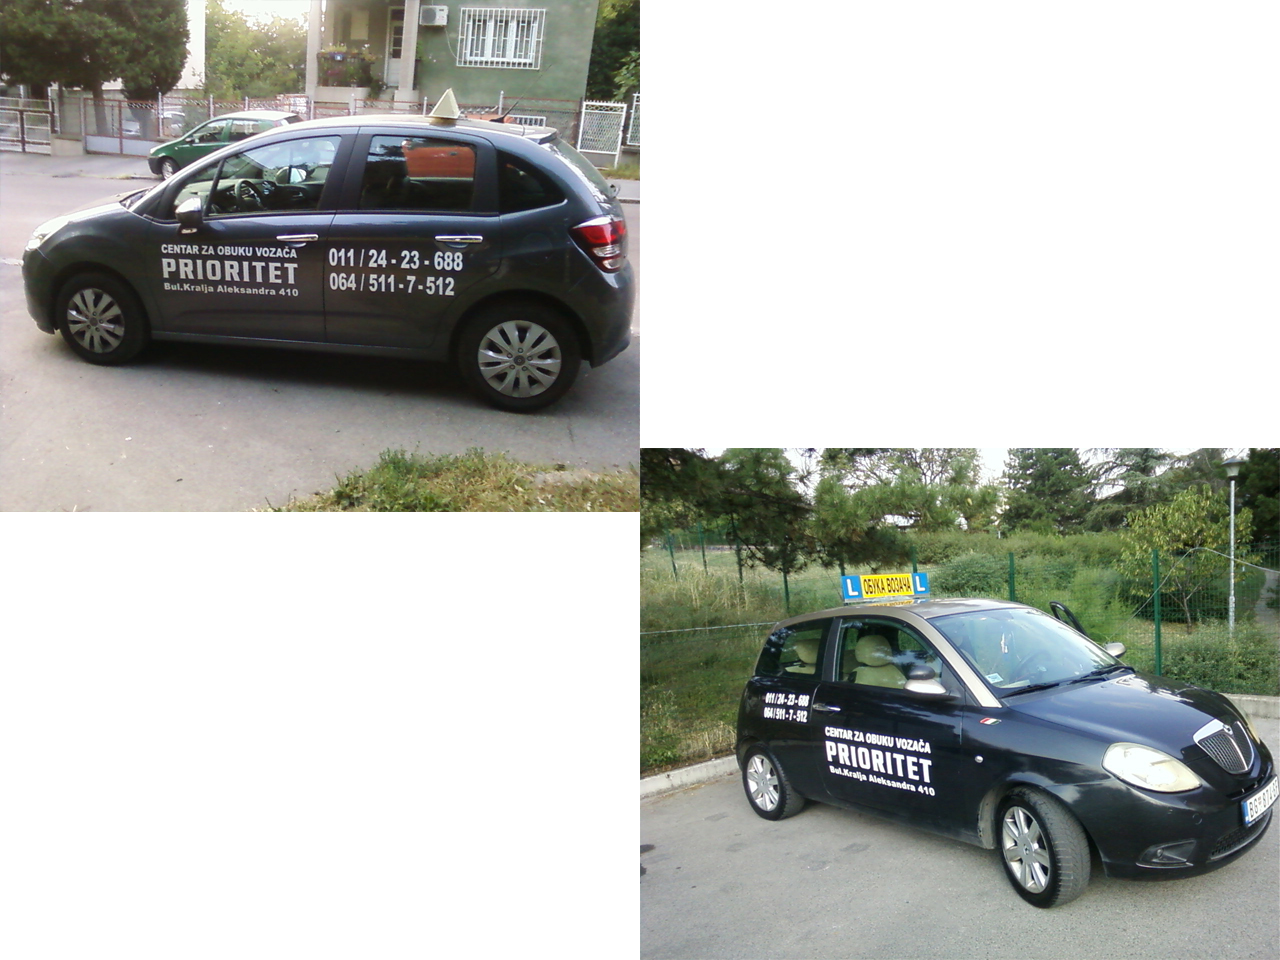 DRIVING SCHOOL PRIORITET Driving schools Beograd